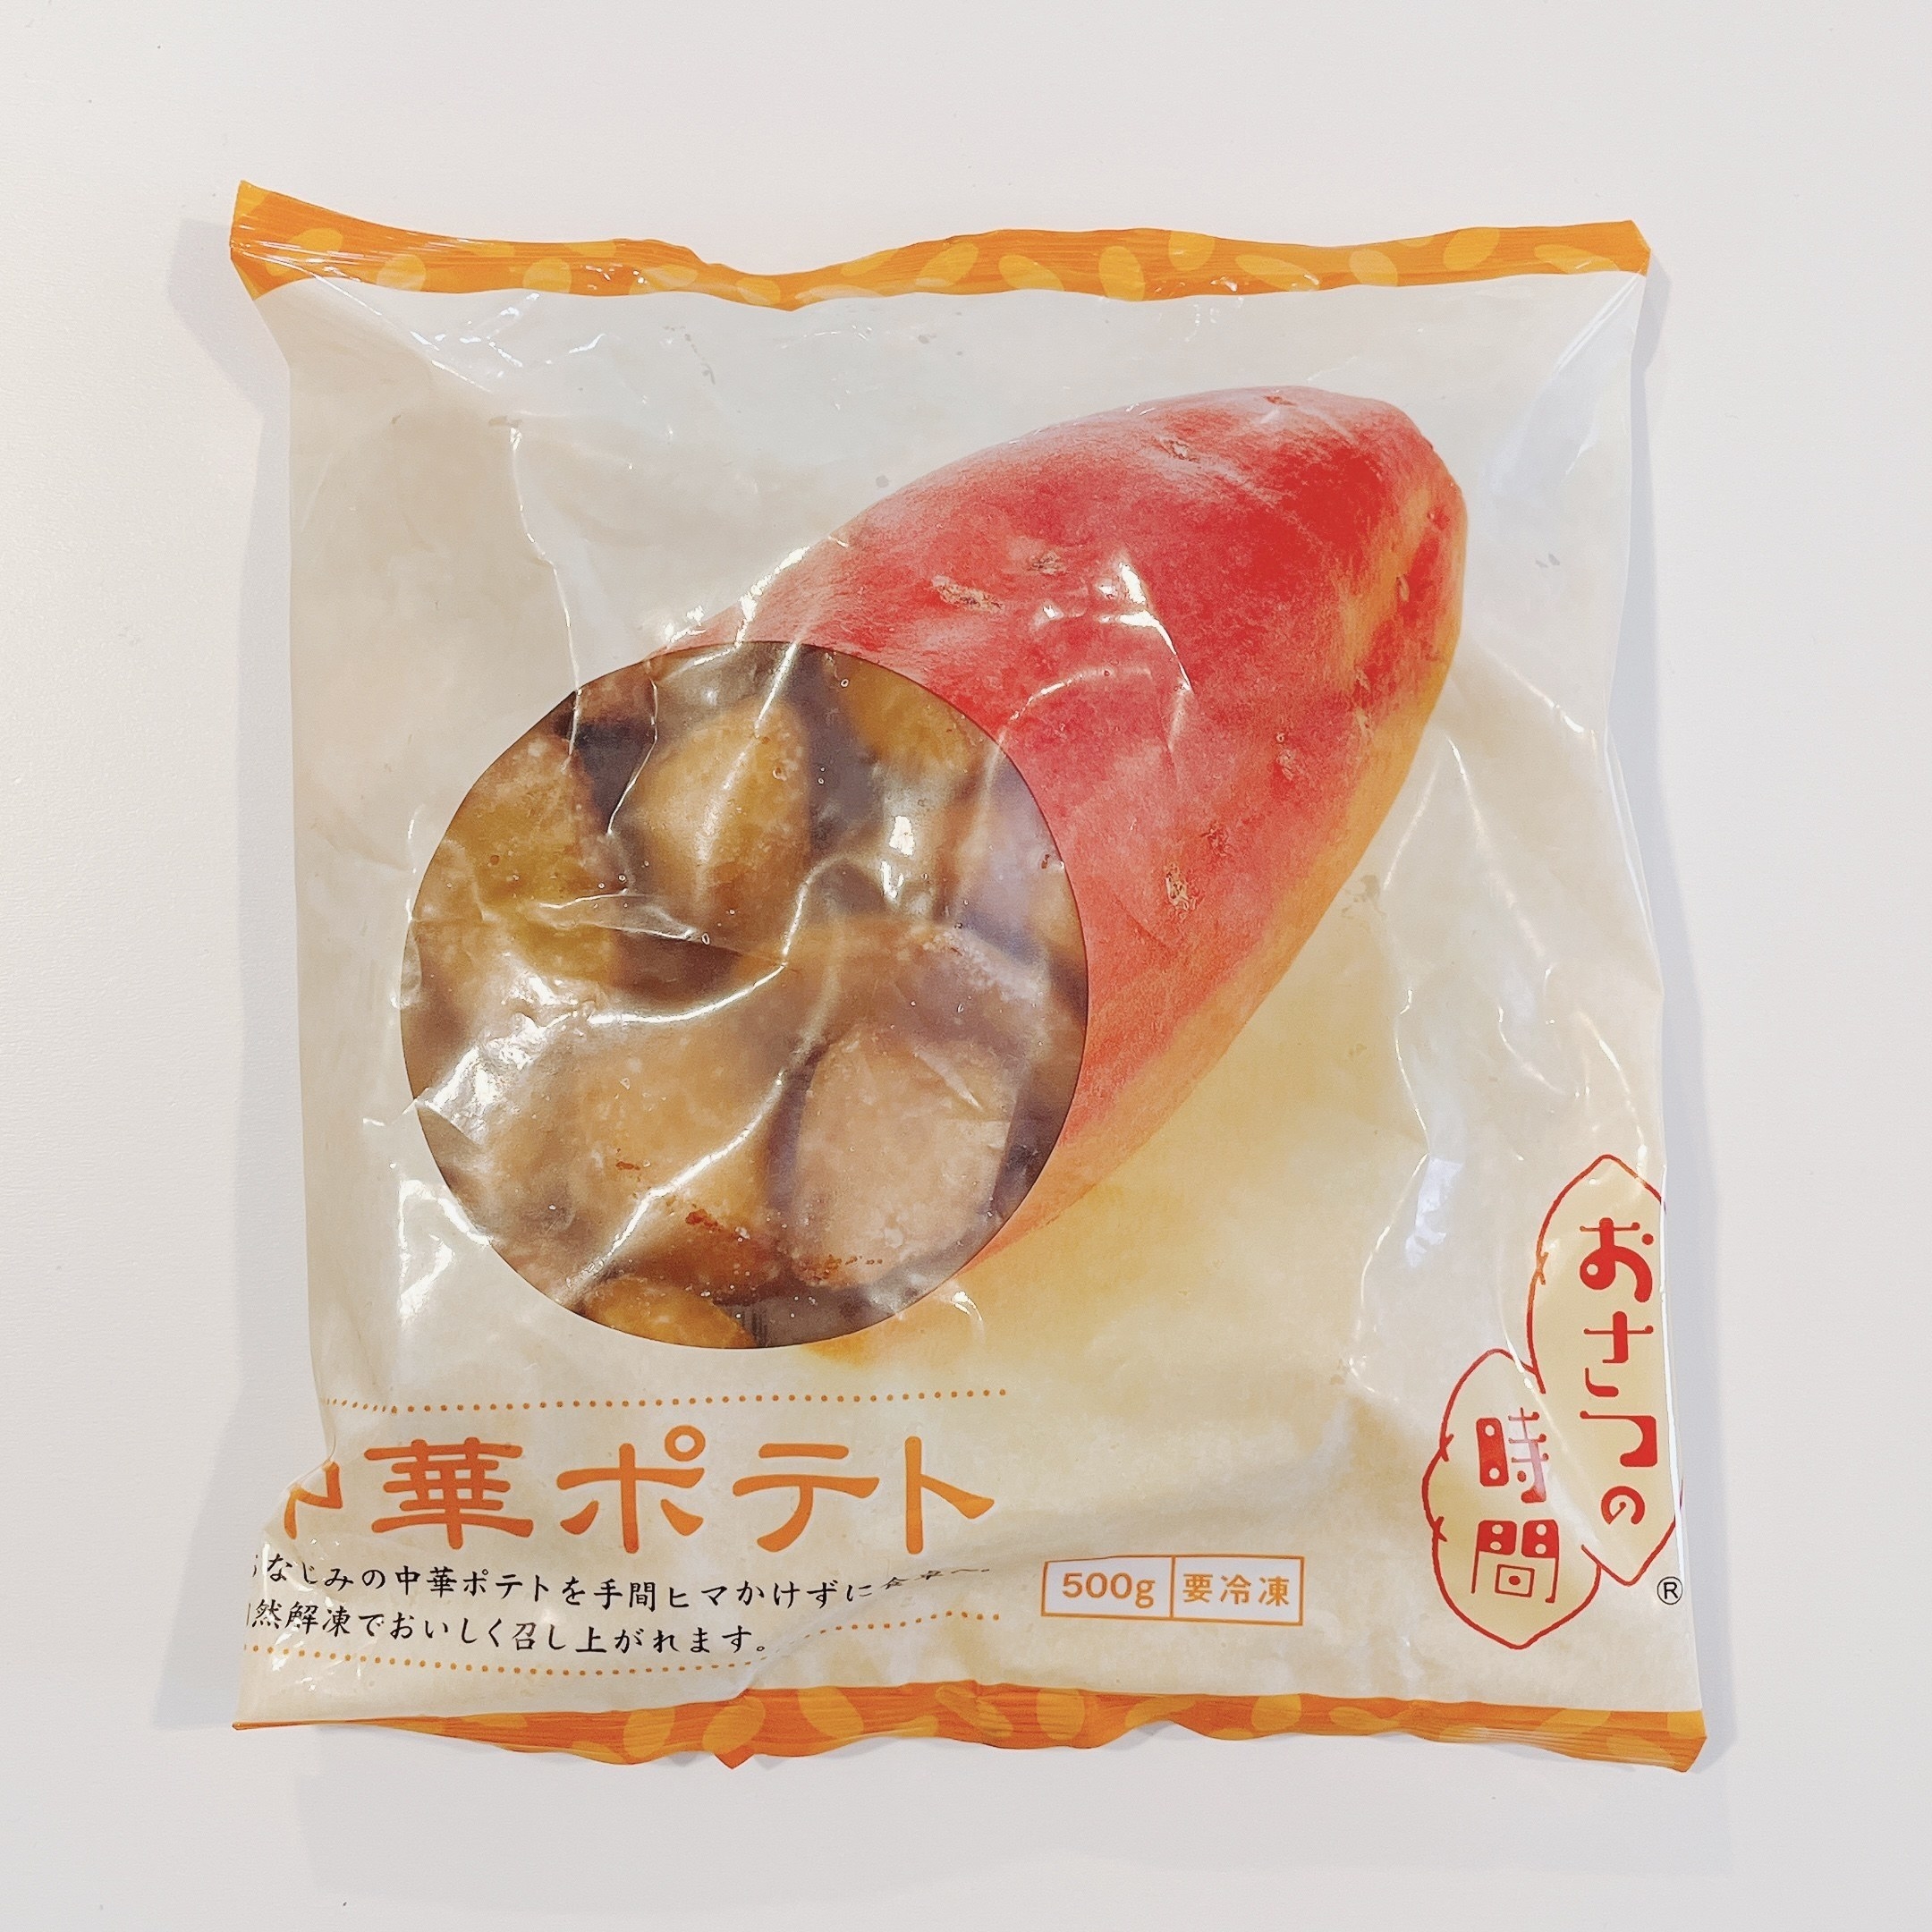 業務スーパーのオススメ商品「中華ポテト」